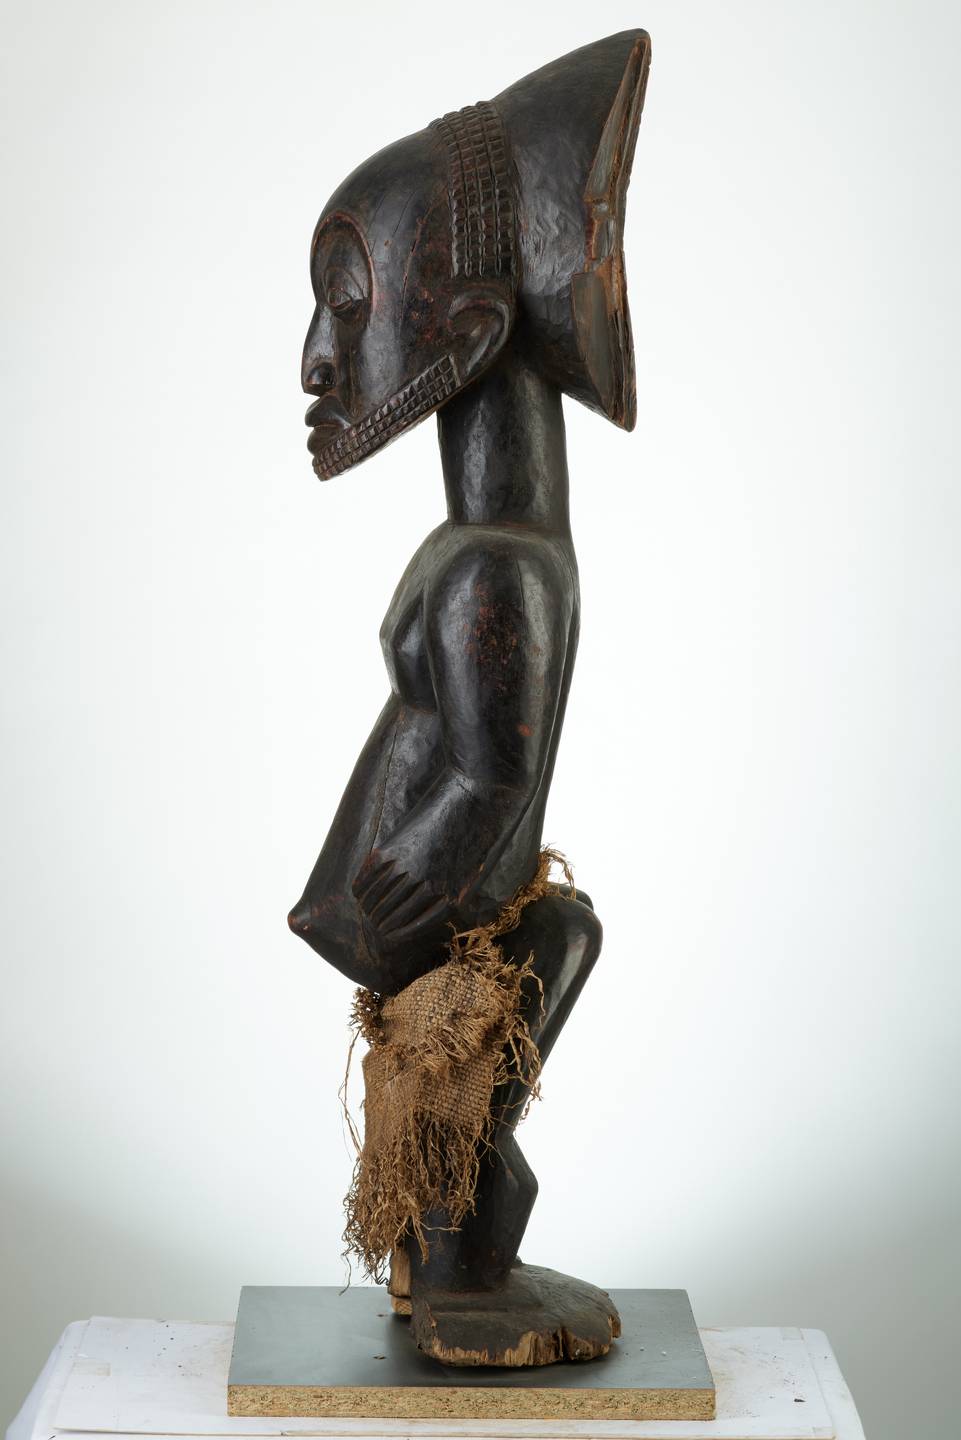 HEMBA (statue )1991, d`afrique : R.D.C., statuette HEMBA (statue )1991, masque ancien africain HEMBA (statue )1991, art du R.D.C. - Art Africain, collection privées Belgique. Statue africaine de la tribu des HEMBA (statue )1991, provenant du R.D.C., 1991:statue d